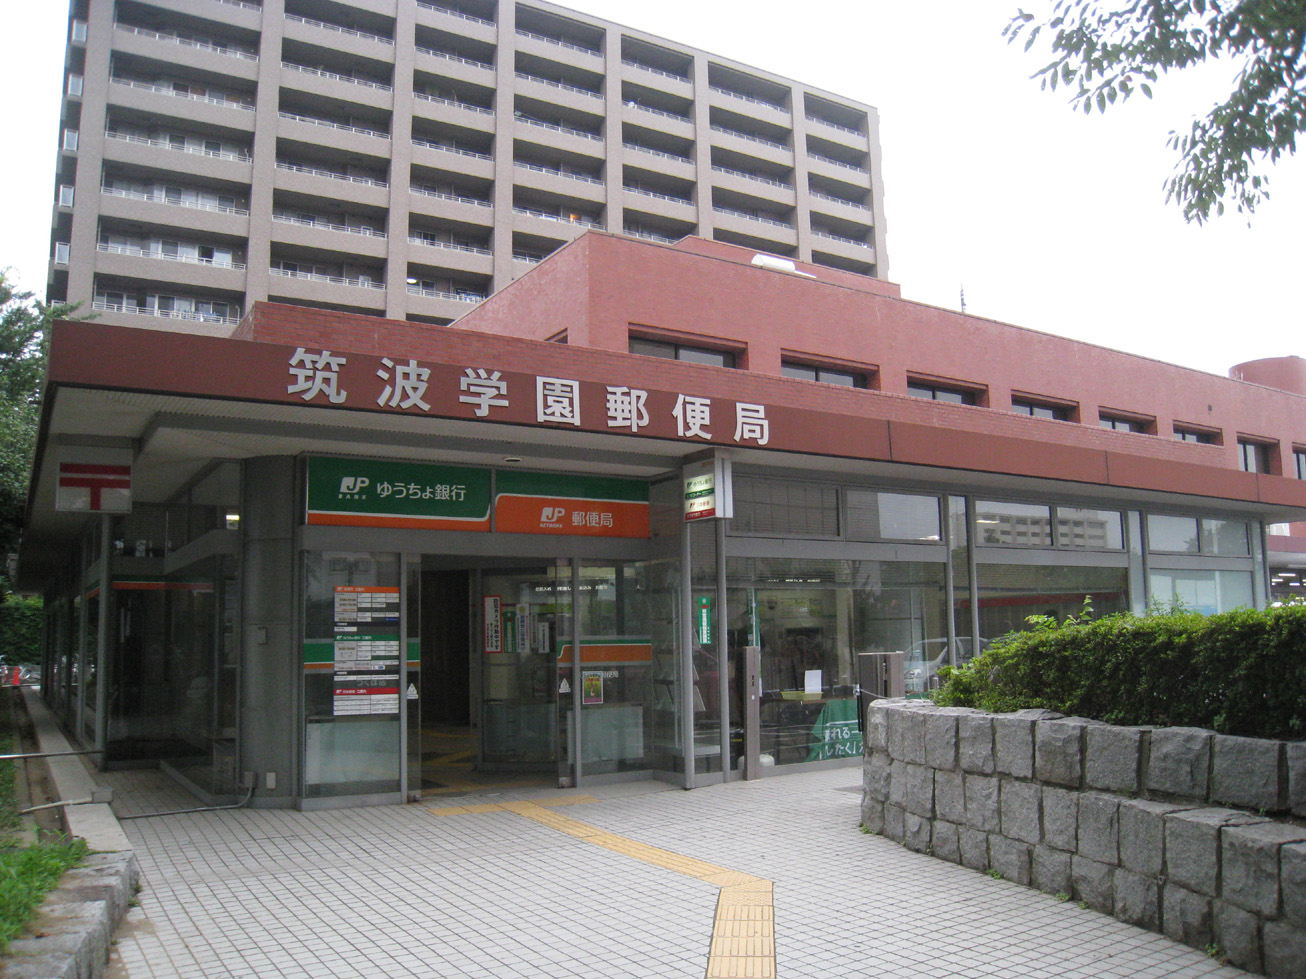 post office. 1988m to Tsukuba Gakuen post office (post office)